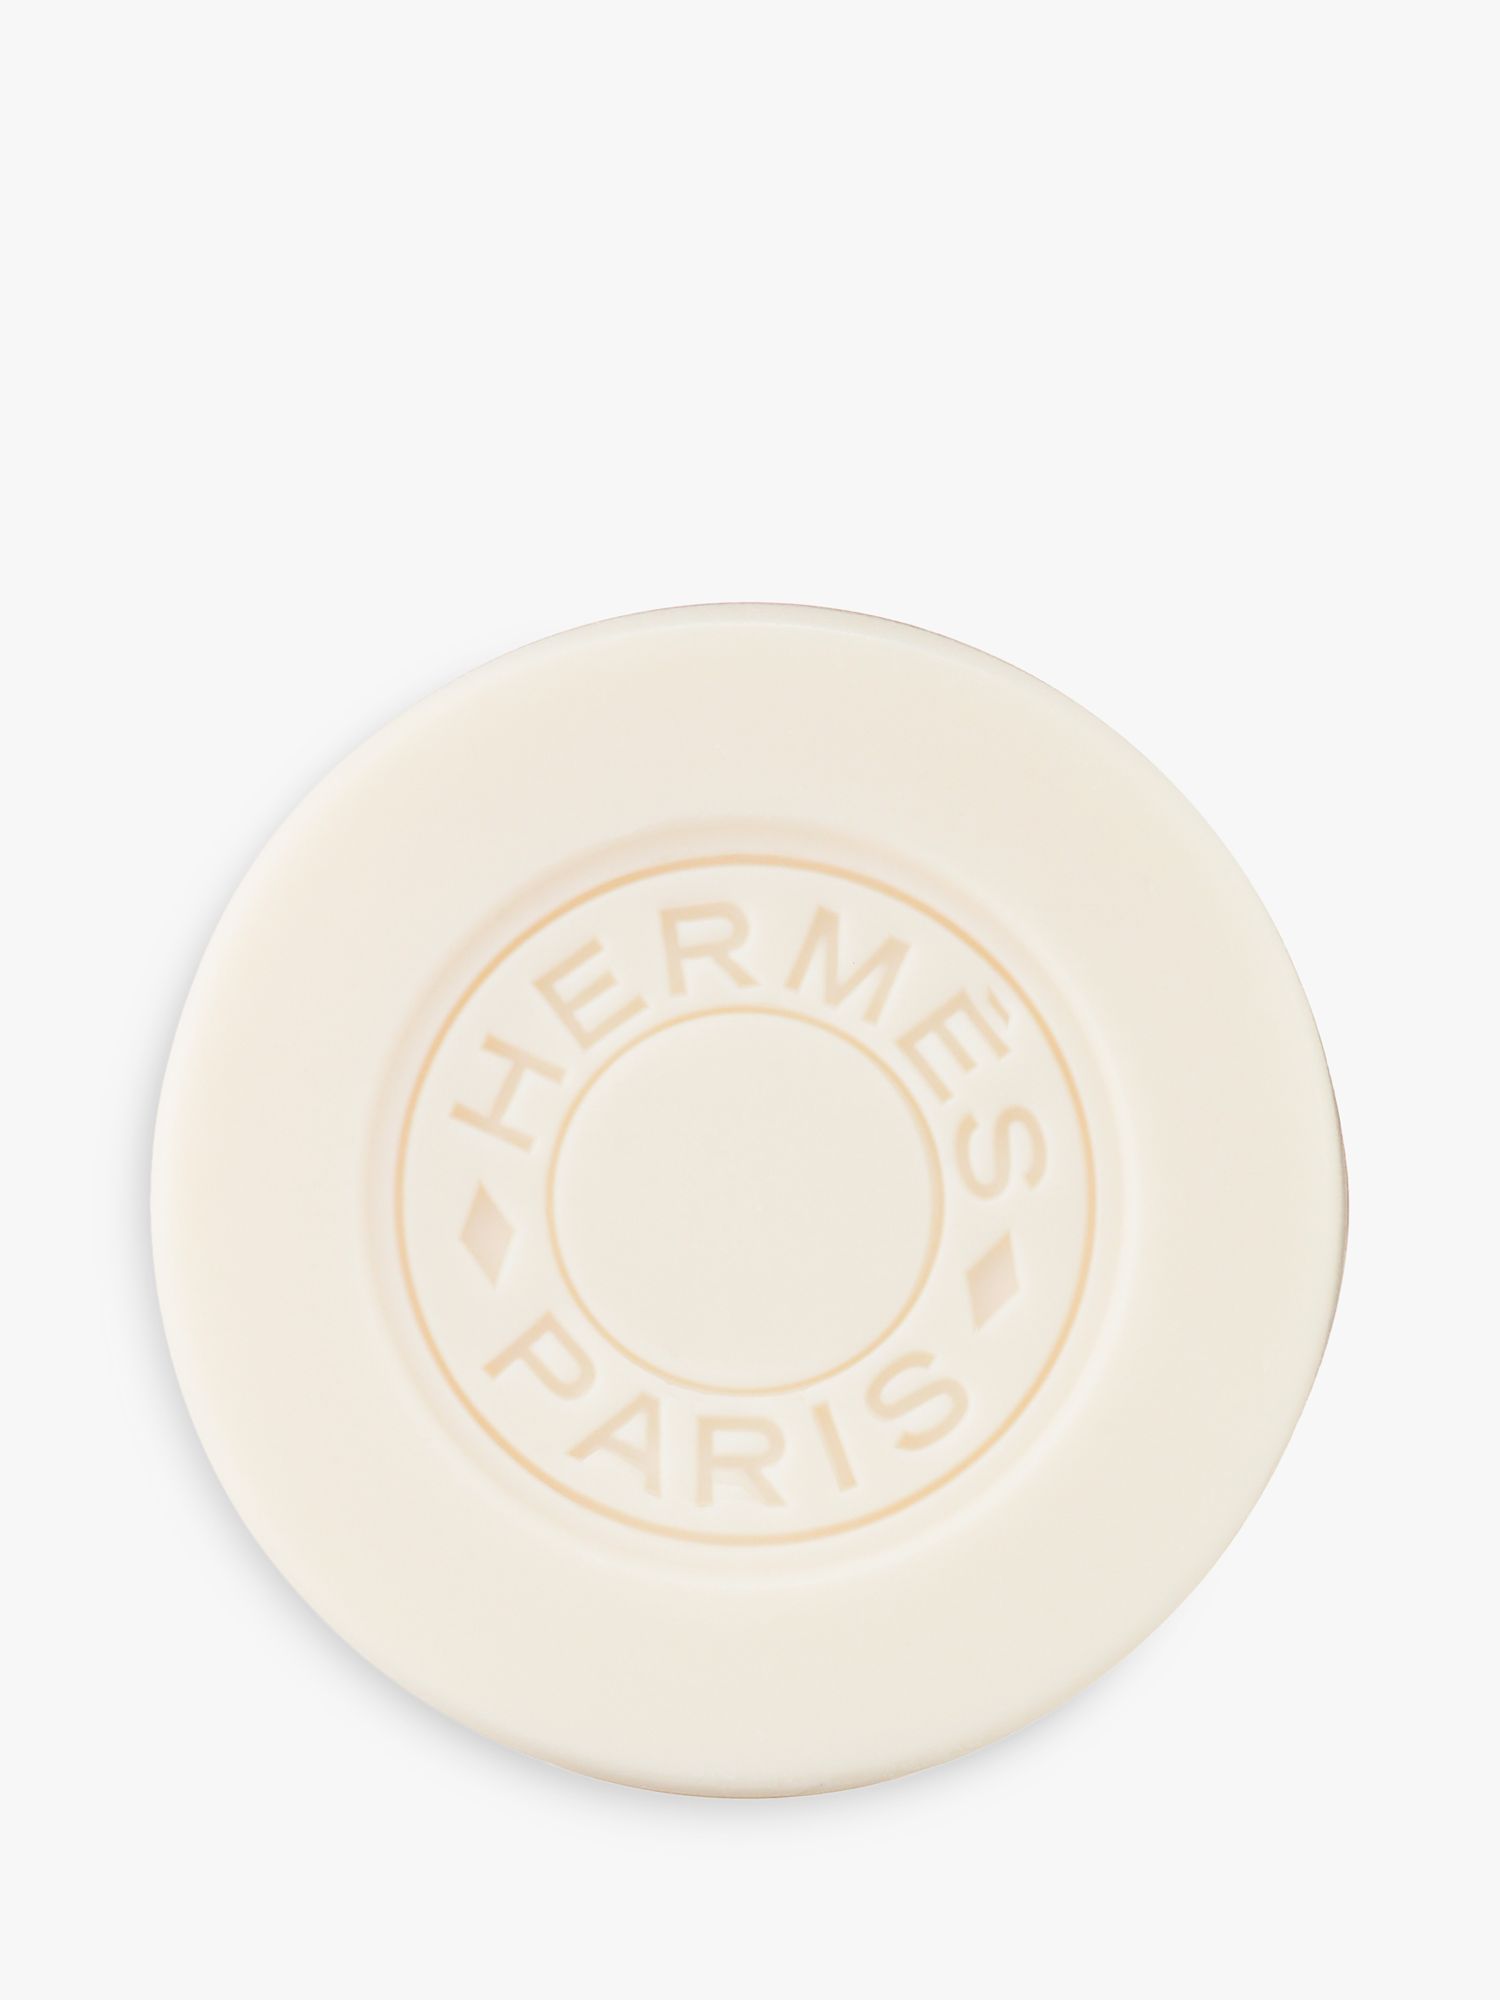 Hermès Twilly d'Hermès Perfumed Soap, 100g 1